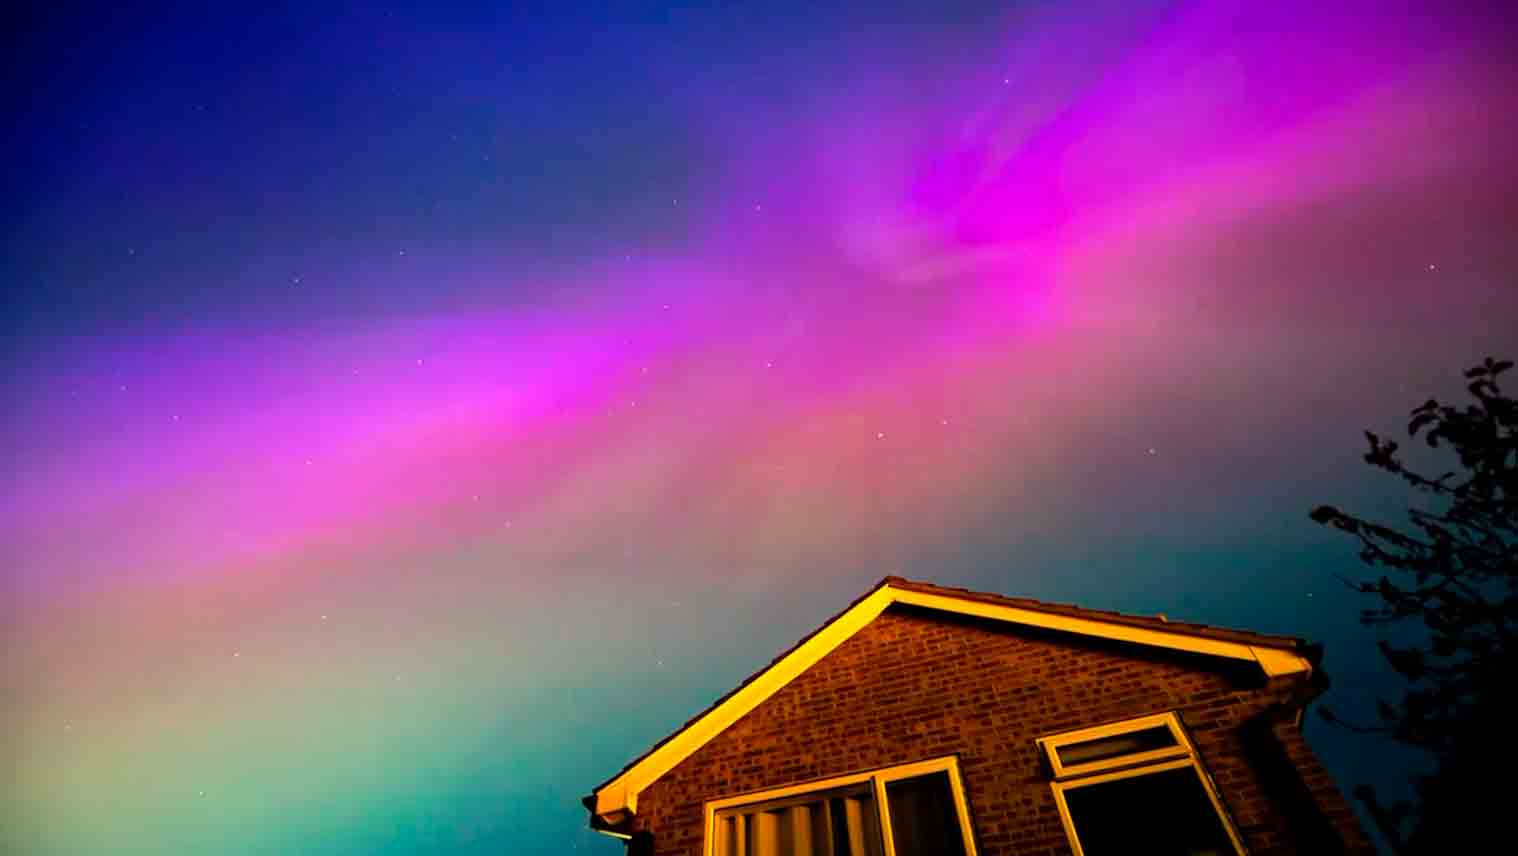 Video: La più grande tempesta solare degli ultimi 20 anni scatena allarme e produce aurore boreali in gran parte dell'emisfero nord. Foto: Riproduzione Twitter @AdamKamacz